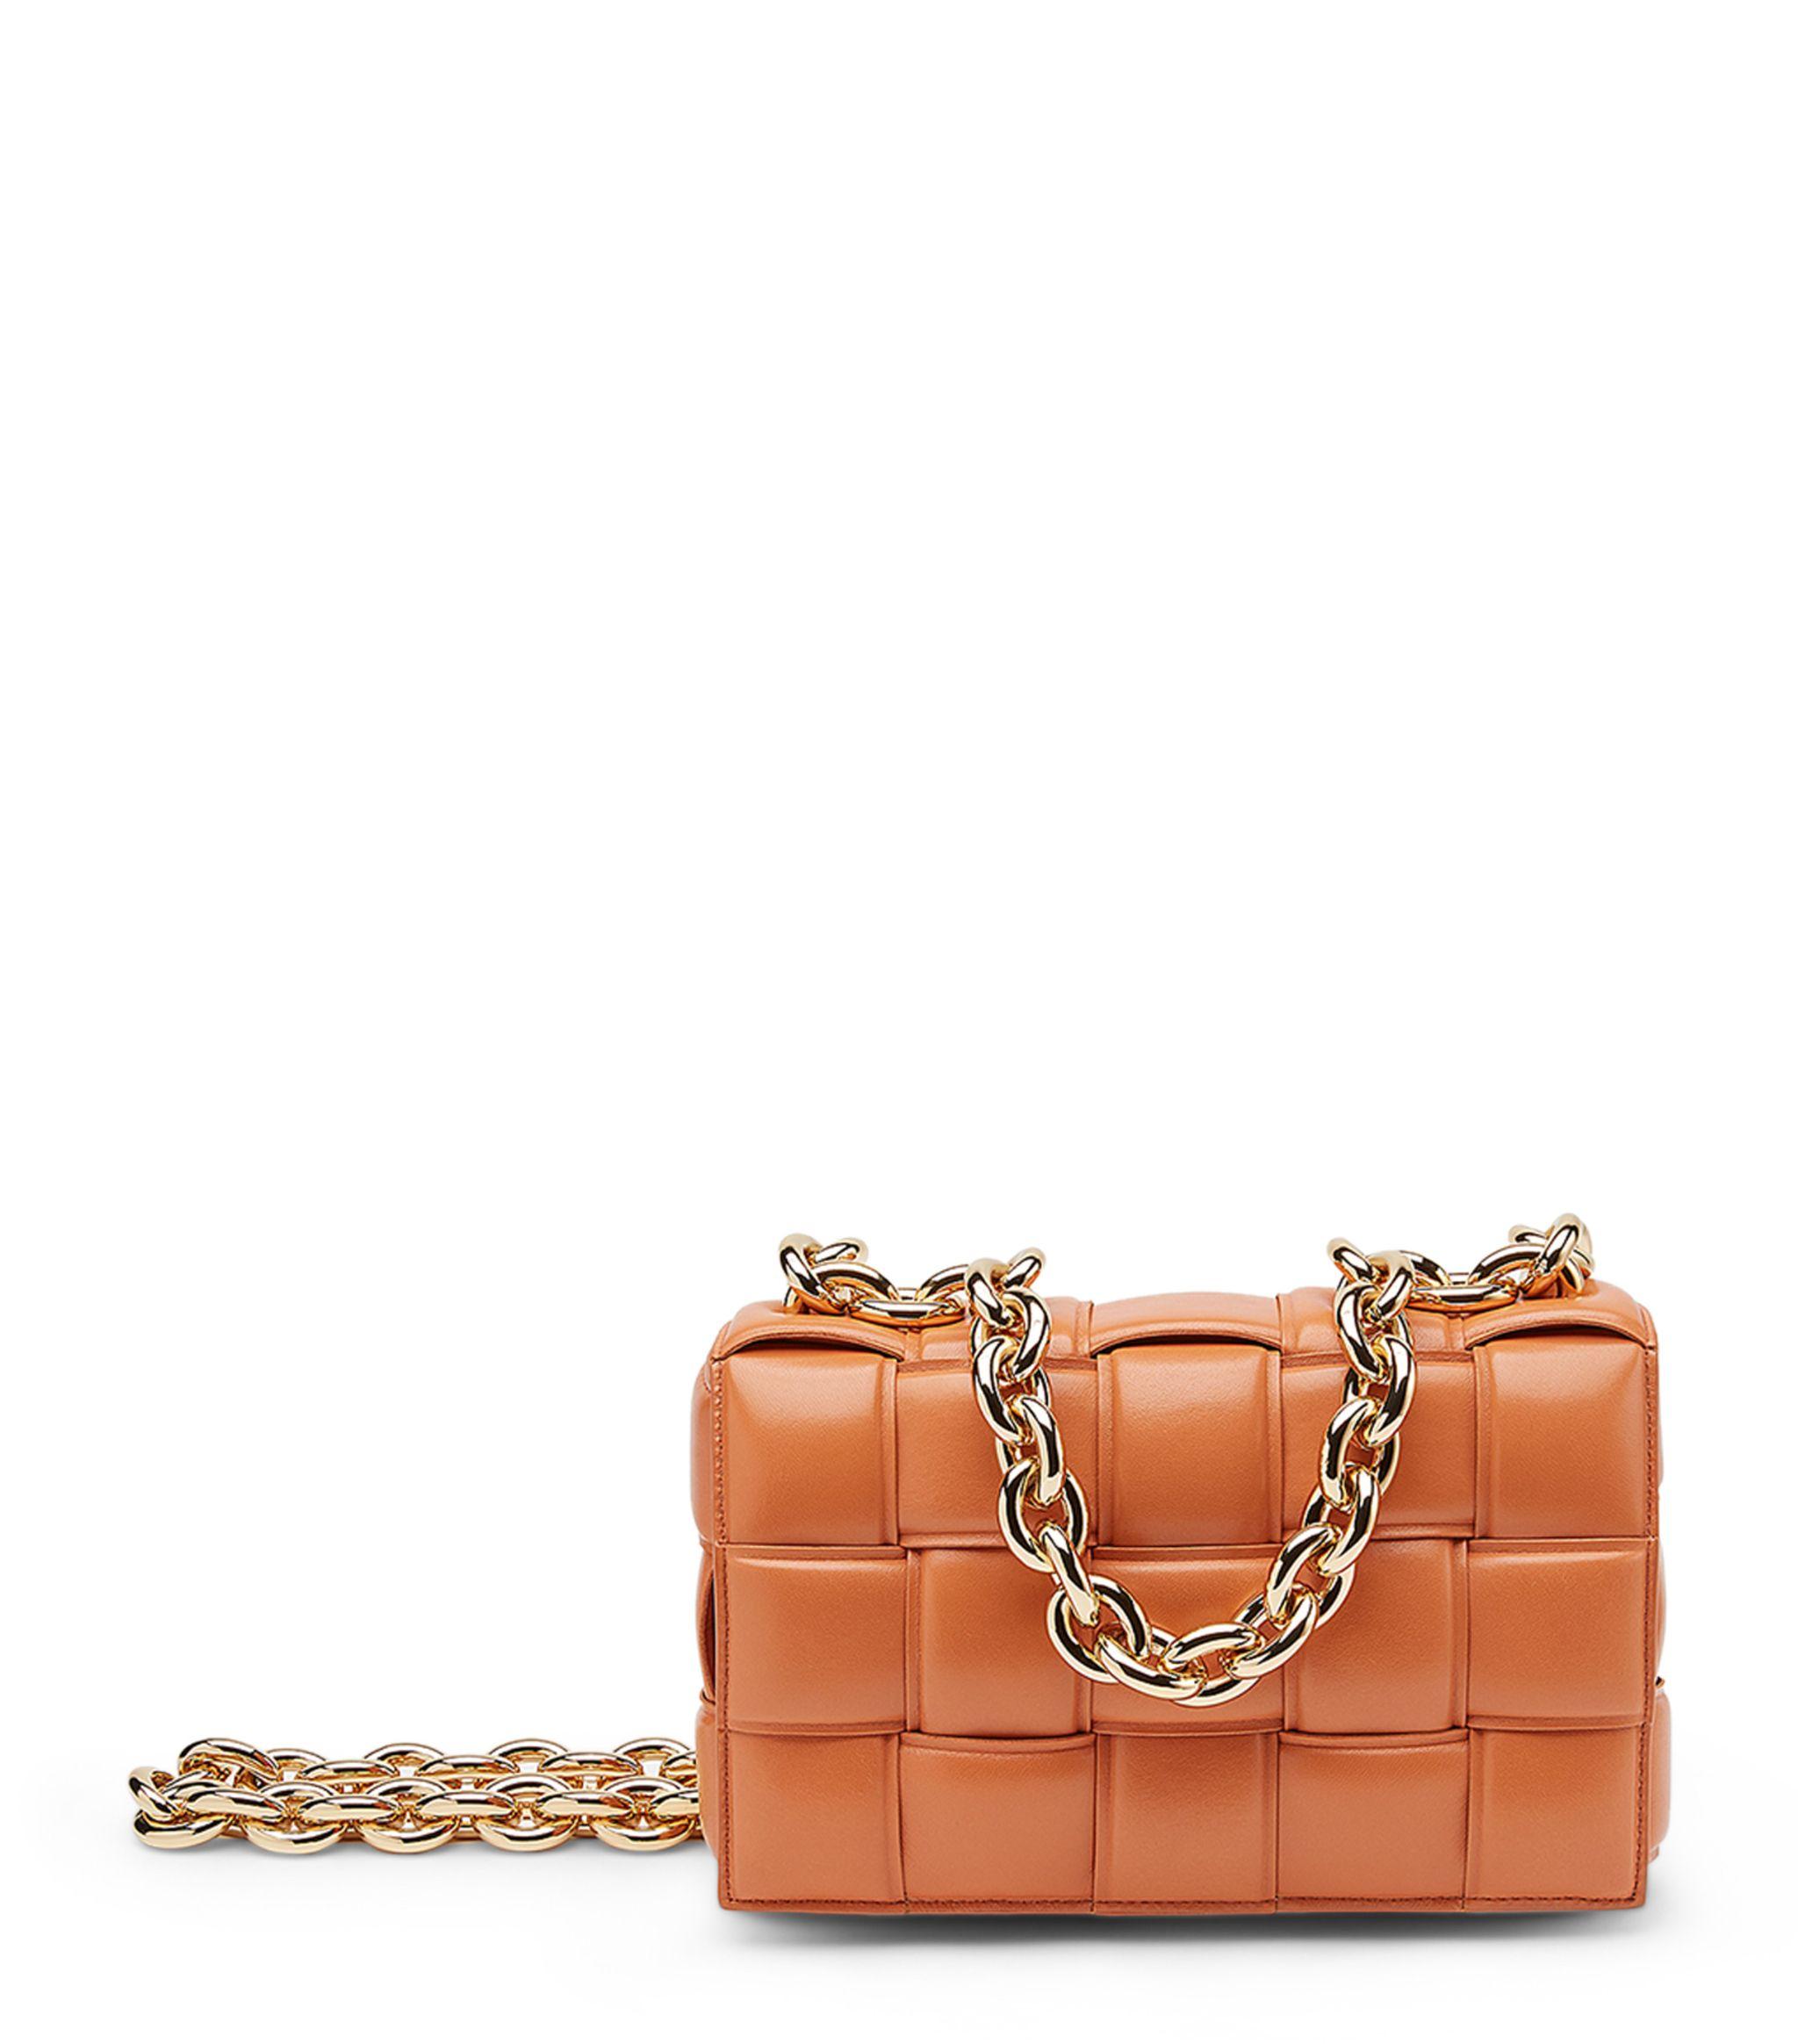 Bottega Veneta Leather The Chain Cassette Cross-body Bag in Orange - Lyst